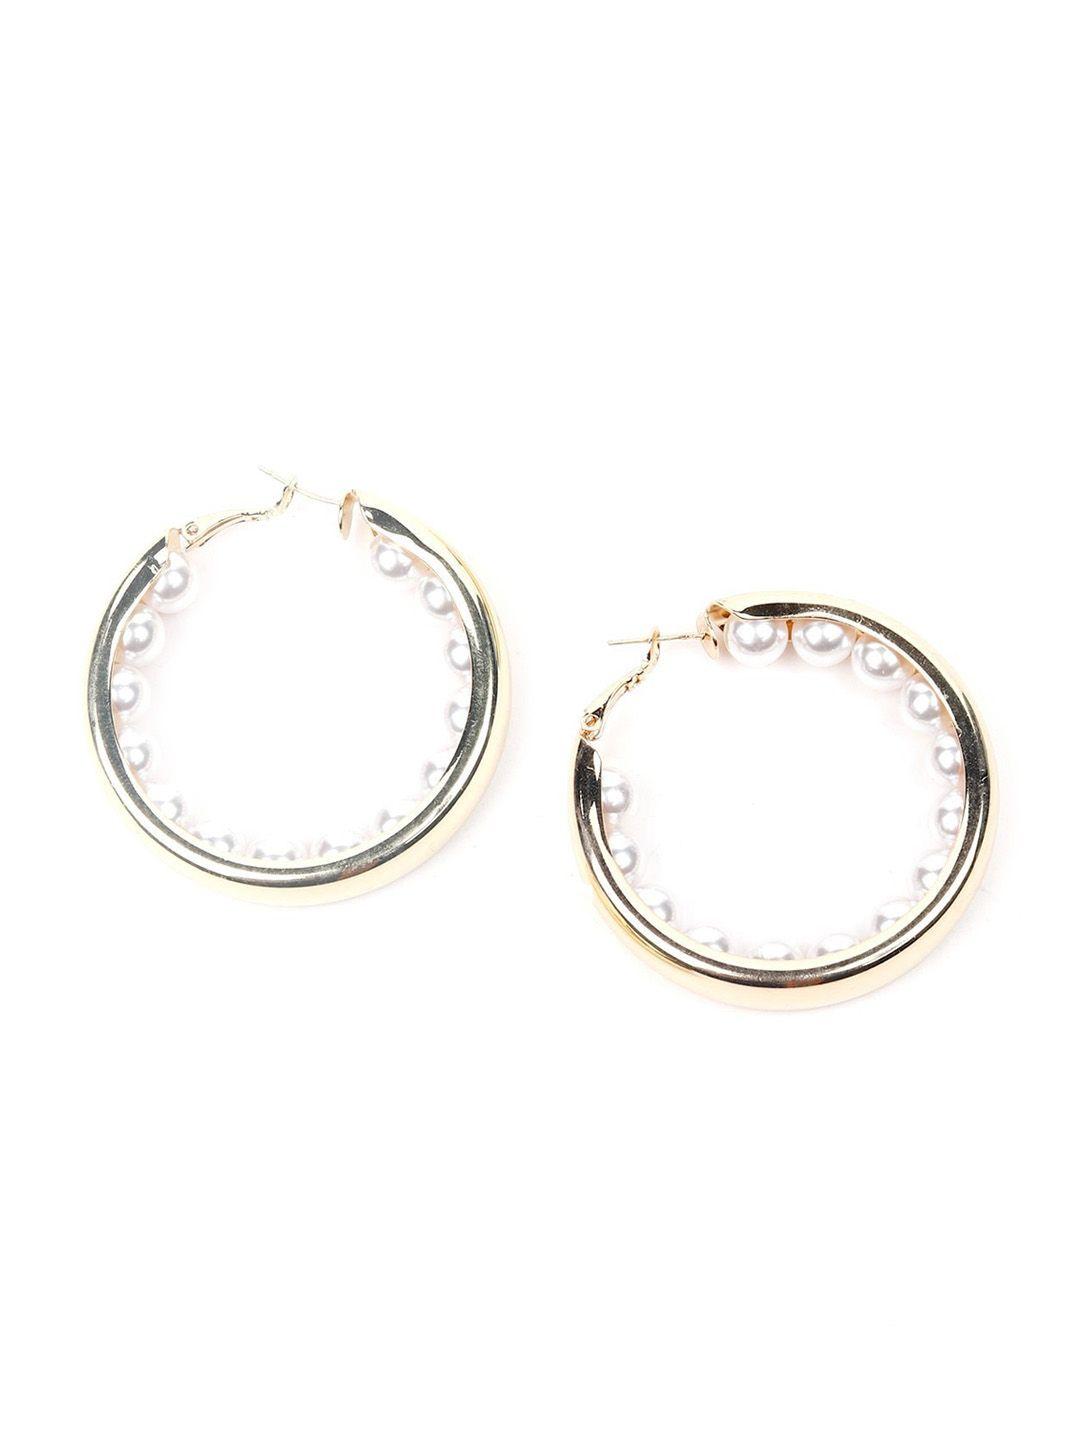 odette silver-toned circular hoop earrings